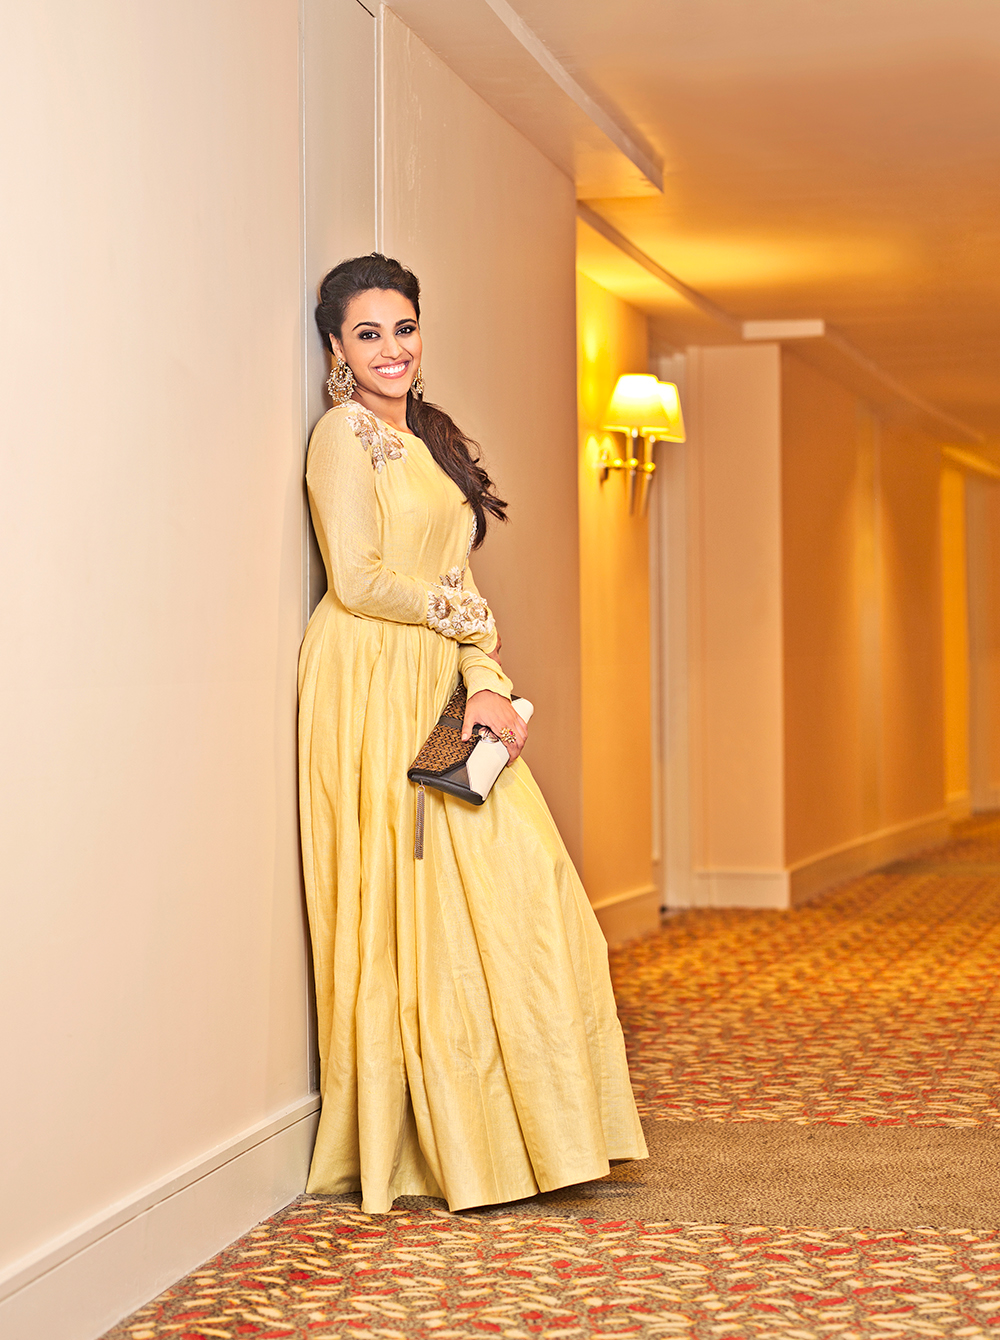 Swara Bhasker fashion editorial lifestyle magazine shoot Female Model female celebrity